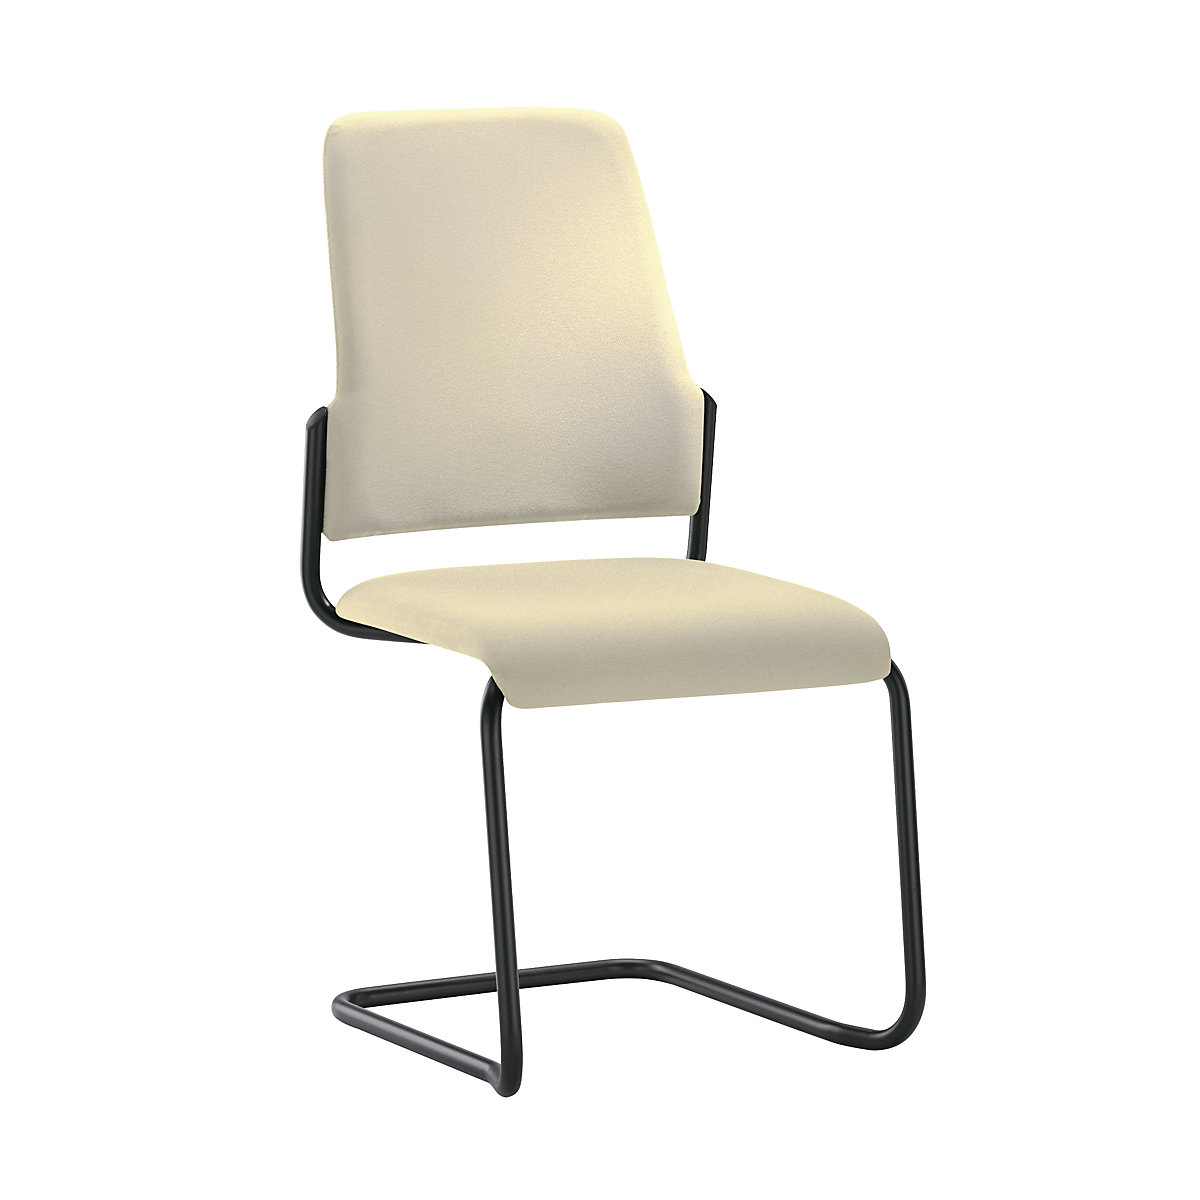 Stolica za posjetitelje GOAL, konzolna stolica, pak. 2 kom. – interstuhl, postolje u crnoj boji, u bež boji-4